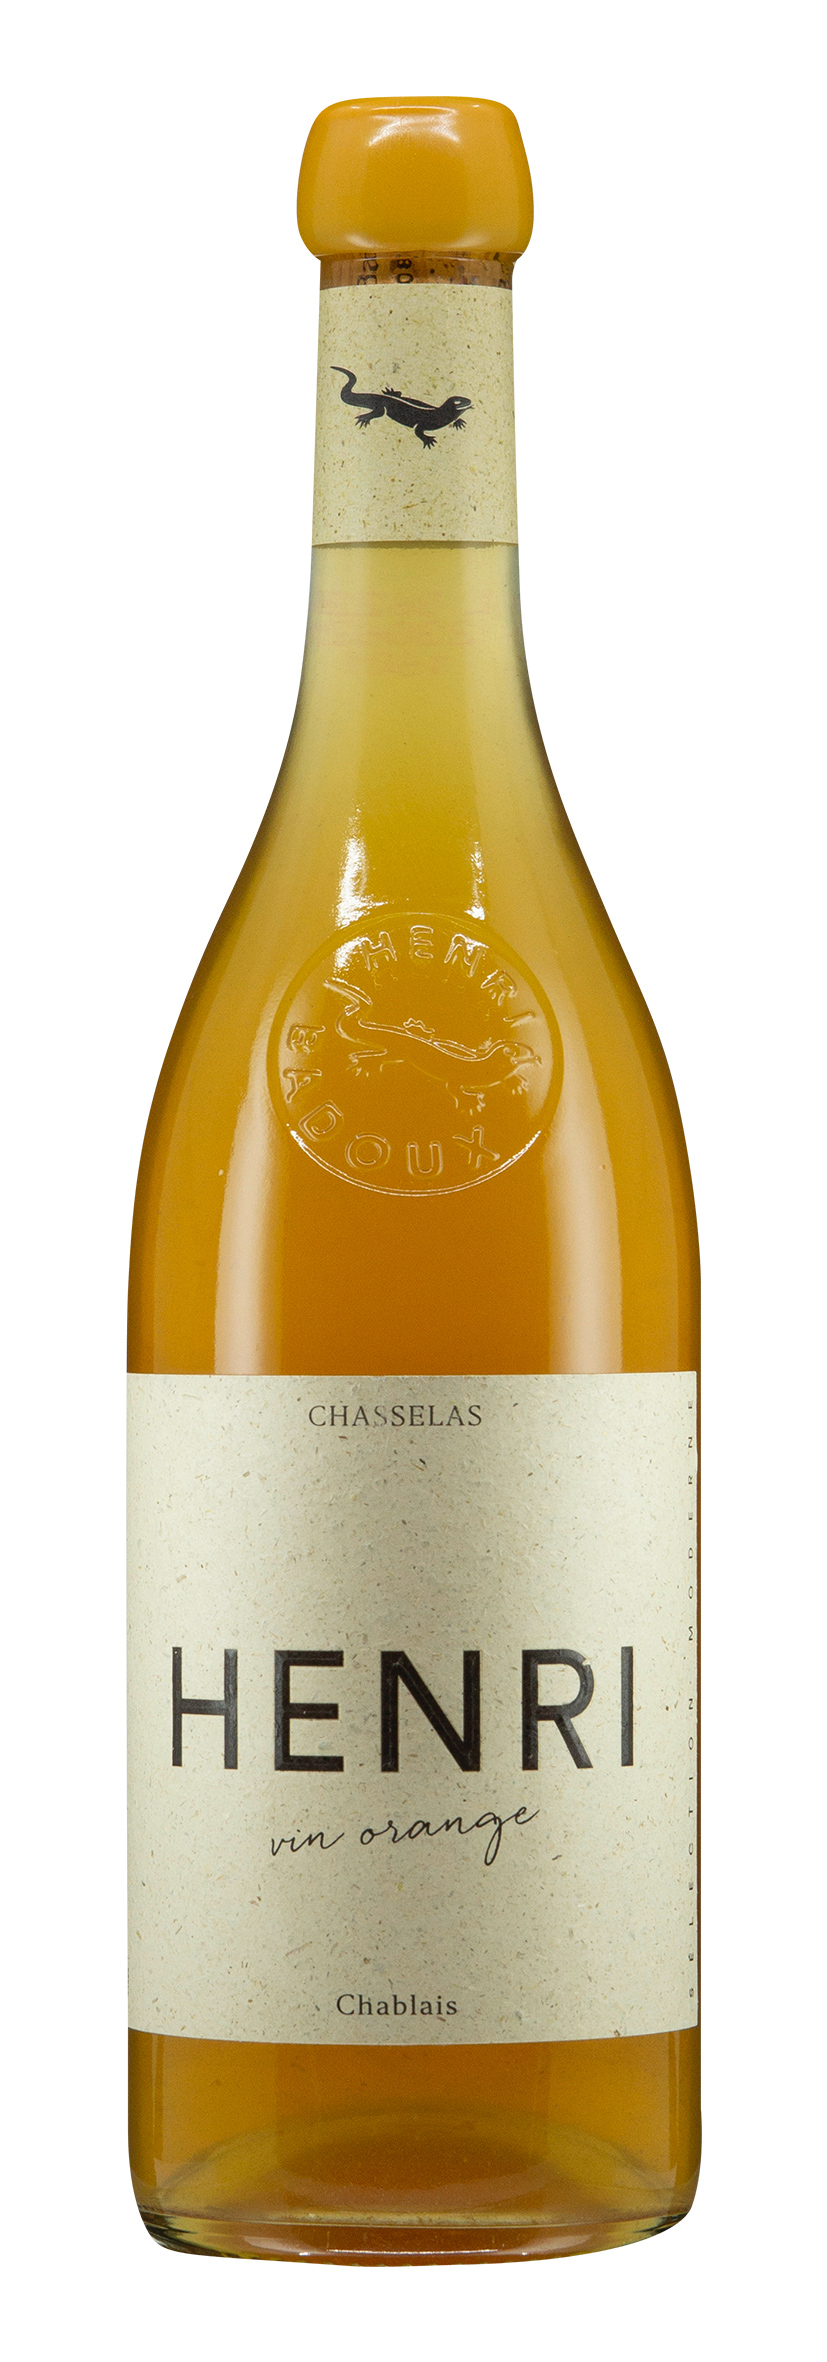 Chablais AOC Henri vin orange 2020